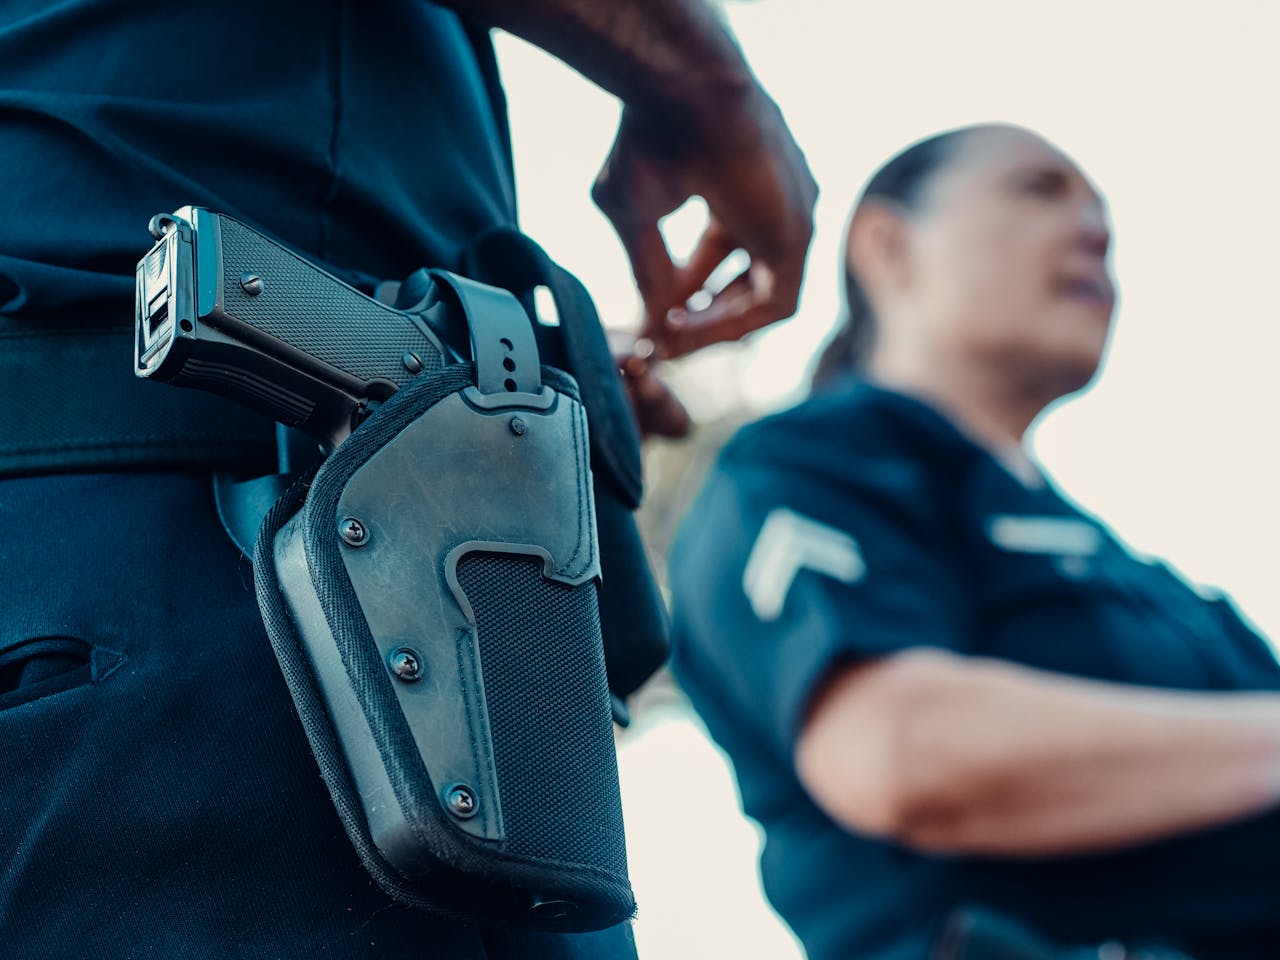 Na zdjęciu widać funkcjonariusza policji, który trzyma dłoń blisko broni podręcznej